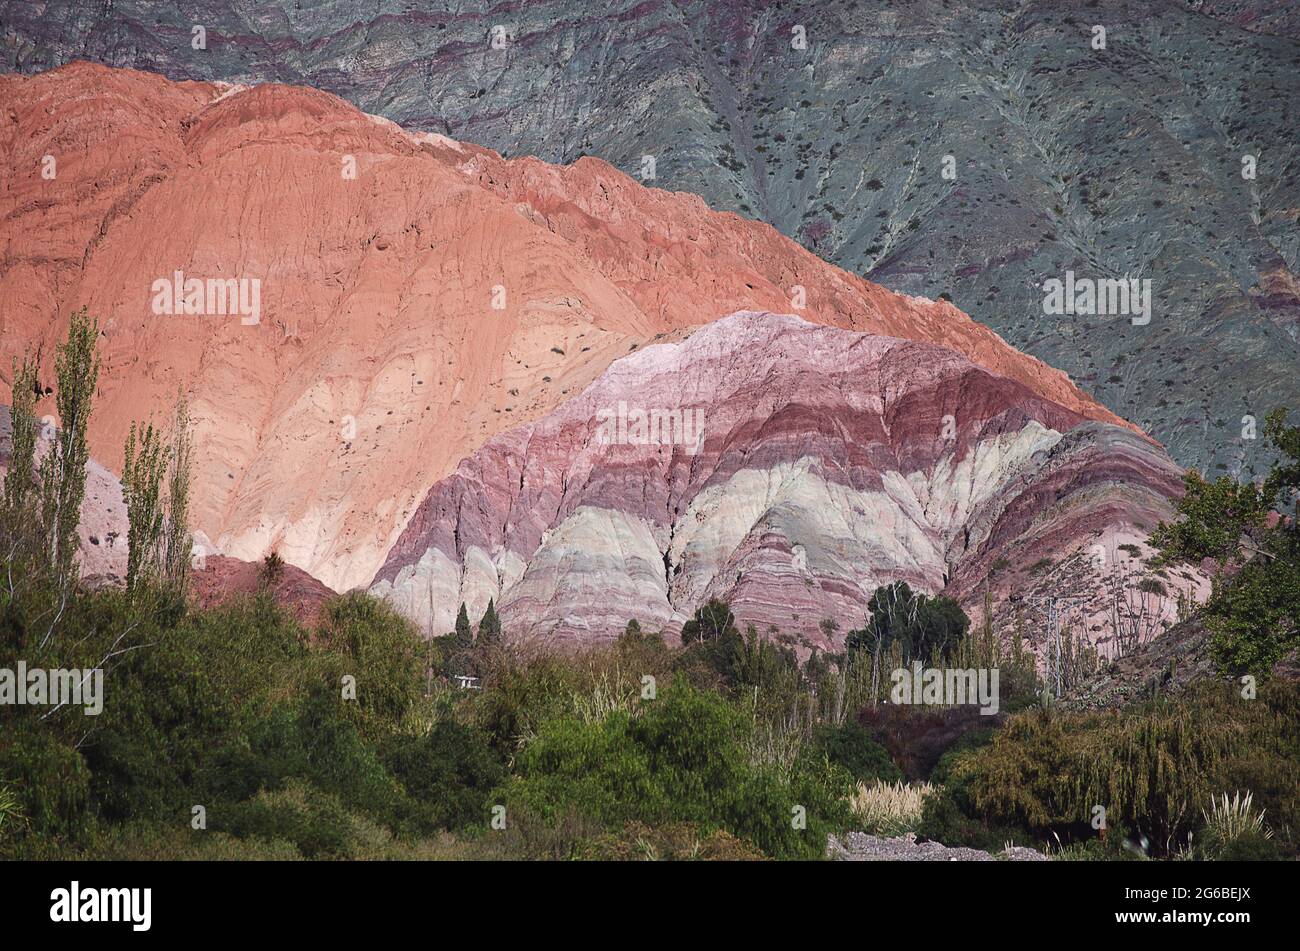 Cerro de los Siete Colores, Quebrada de Purmamarca, Jujuy, Argentina Stock Photo